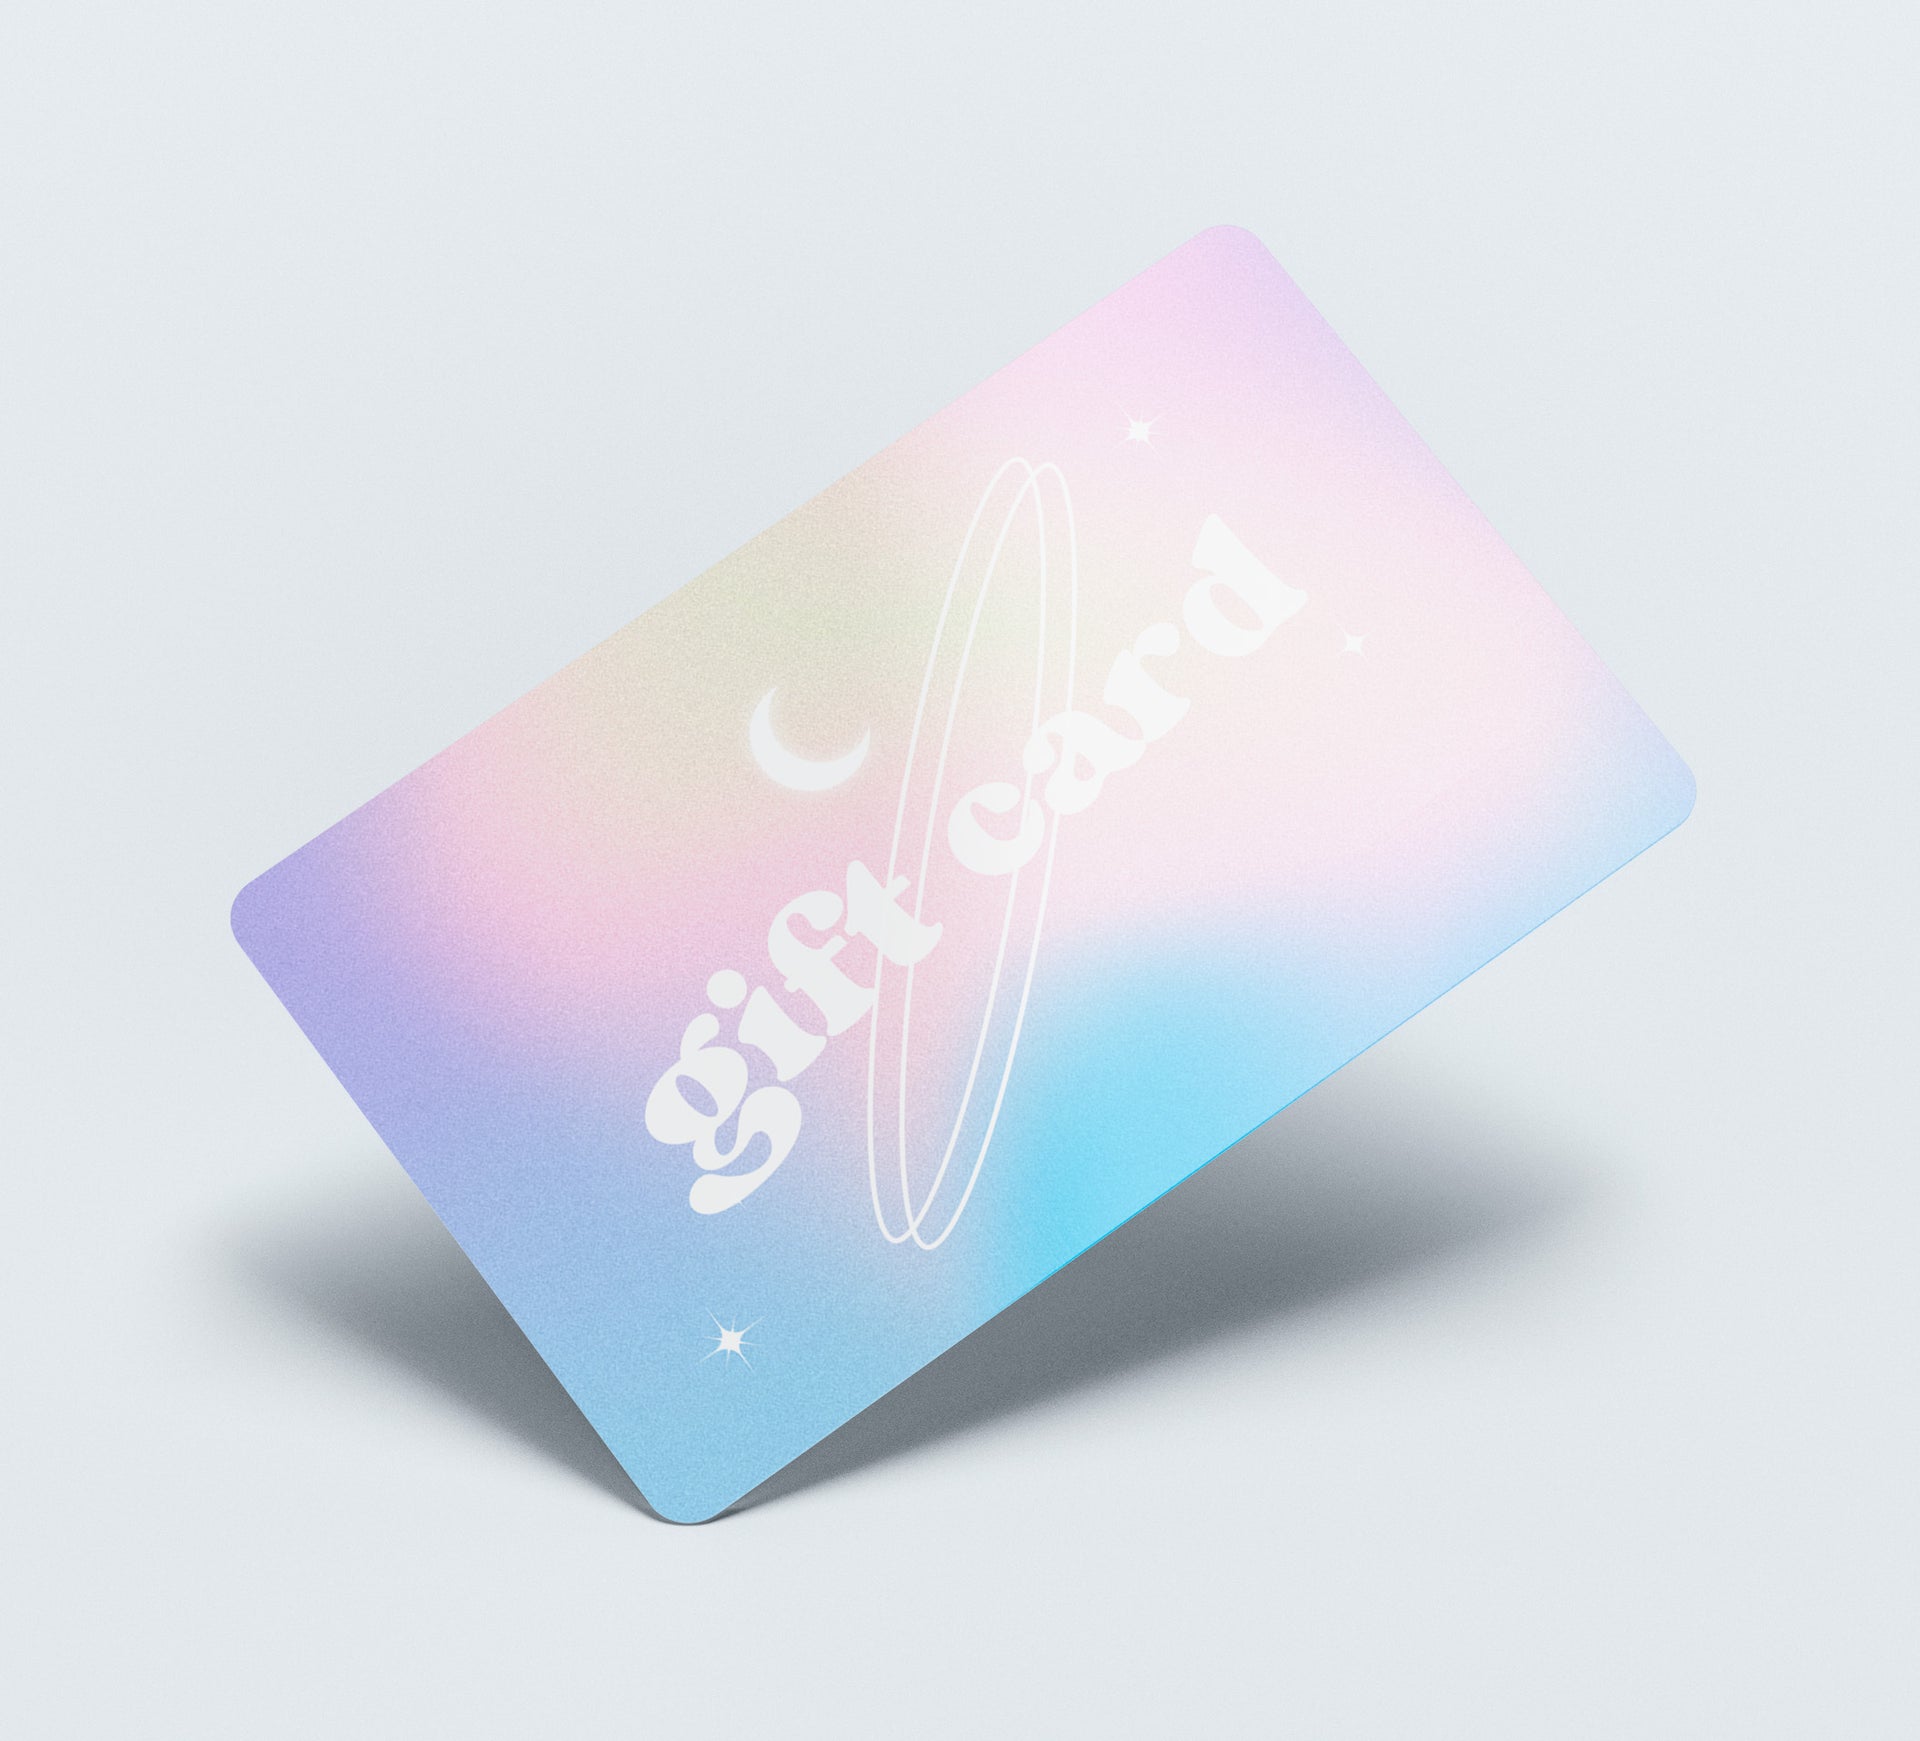 Compra Barato  Gift Card (MX) Online - SEAGM